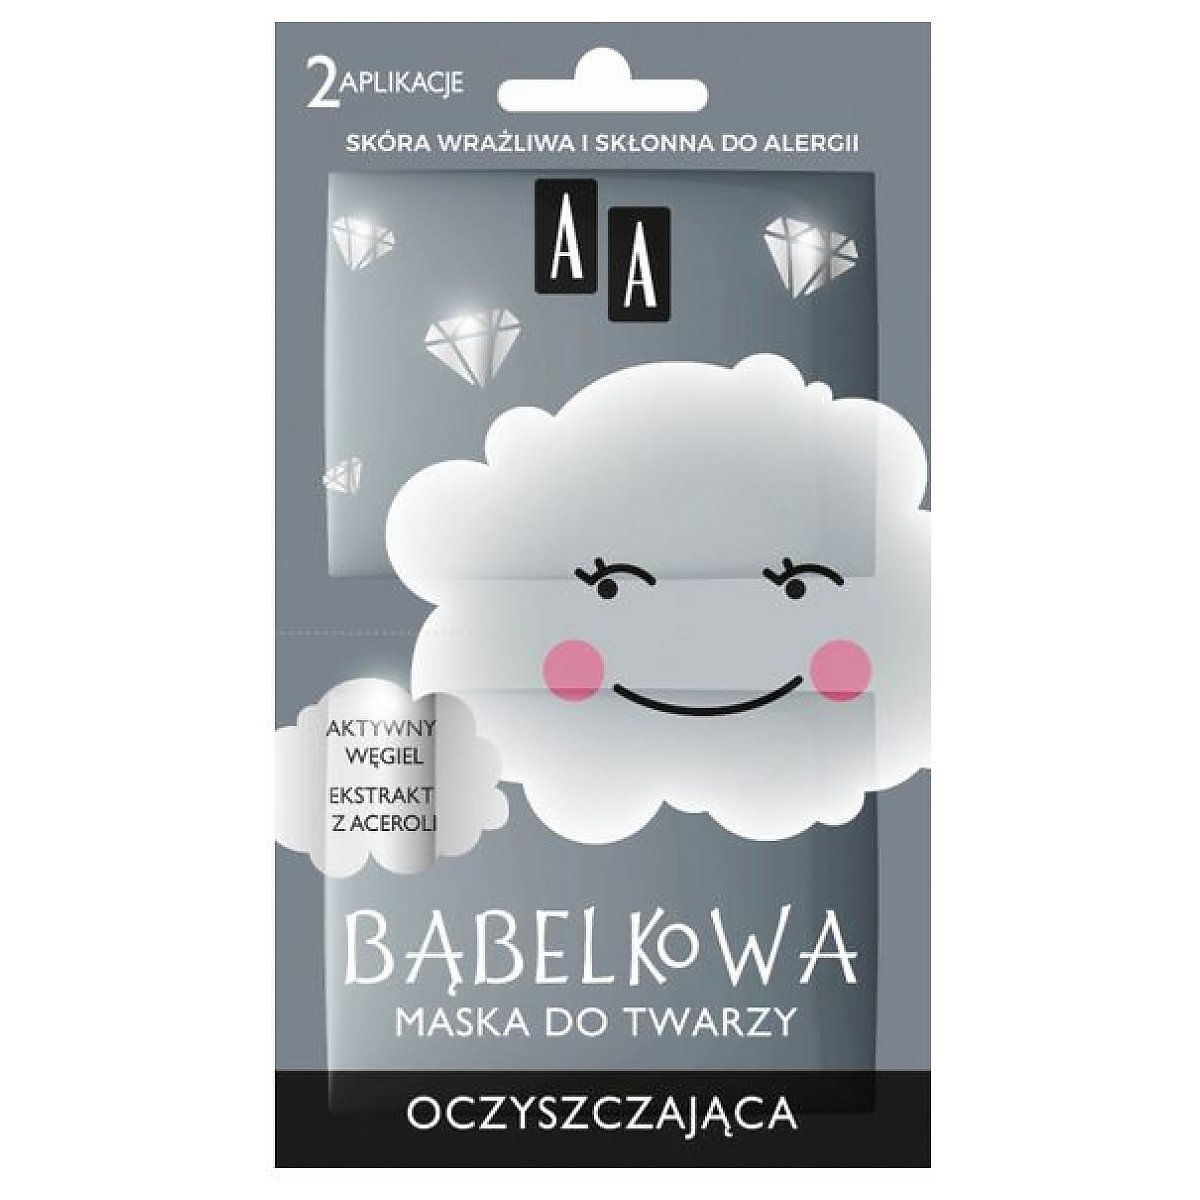 Bubble Mask Maseczka bąbelkowa oczyszczająca 2 4g - Dolce.pl